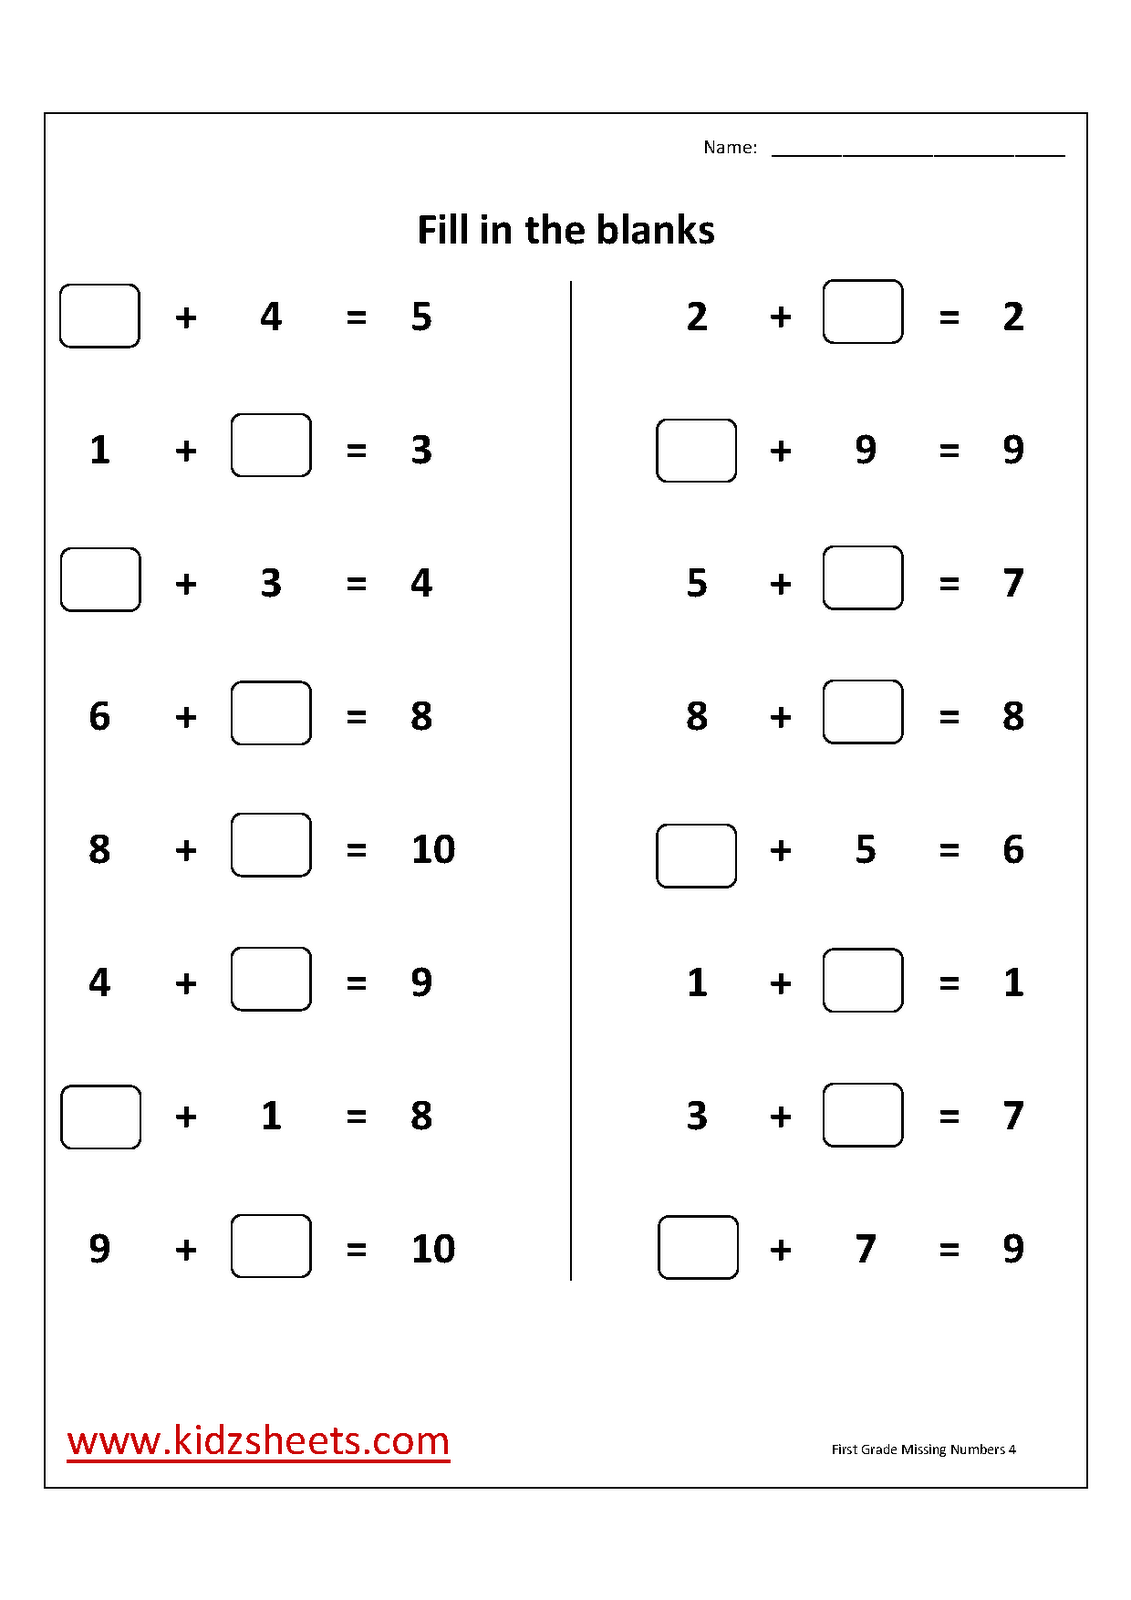 First Grade Missing Number Worksheets